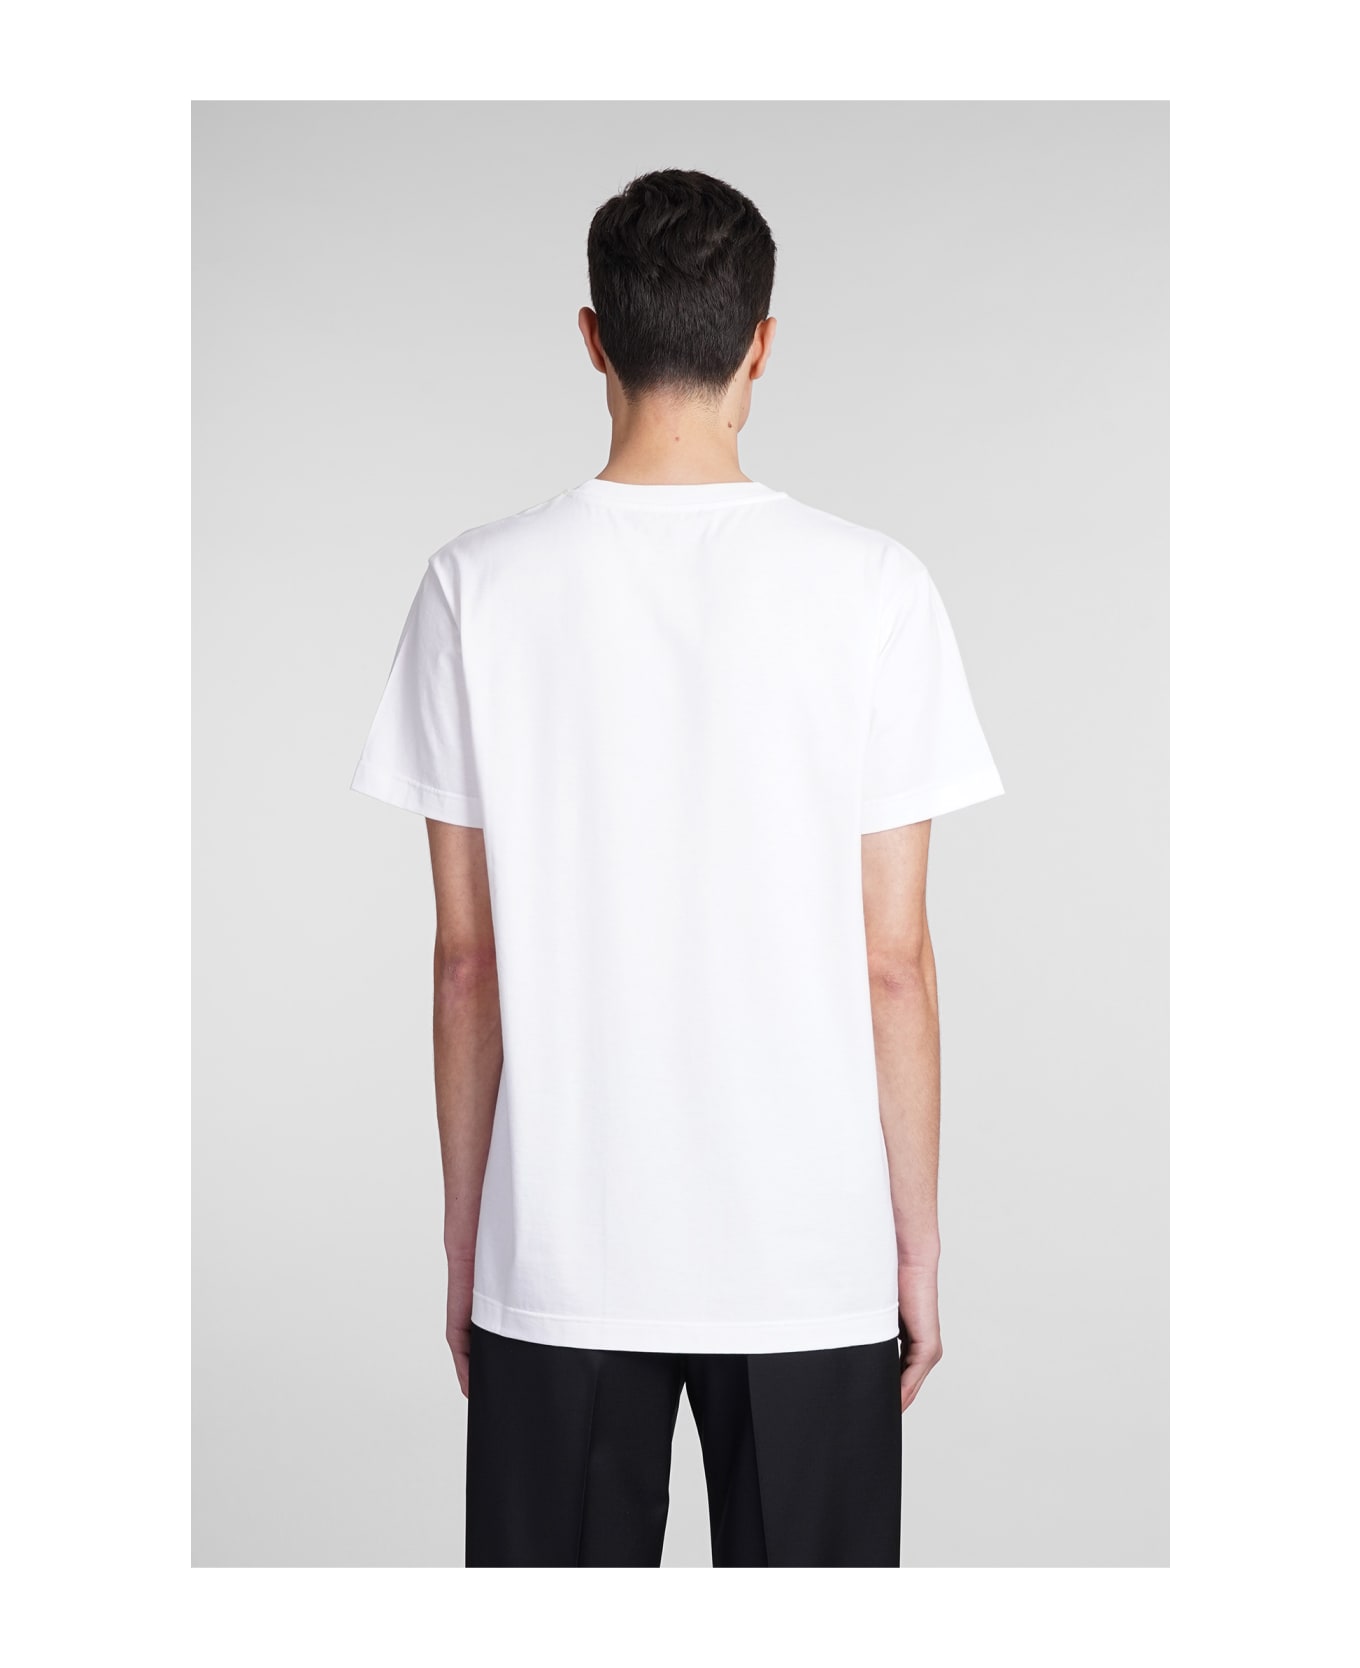 Giuseppe Zanotti Lr01 T-shirt In White Cotton - white